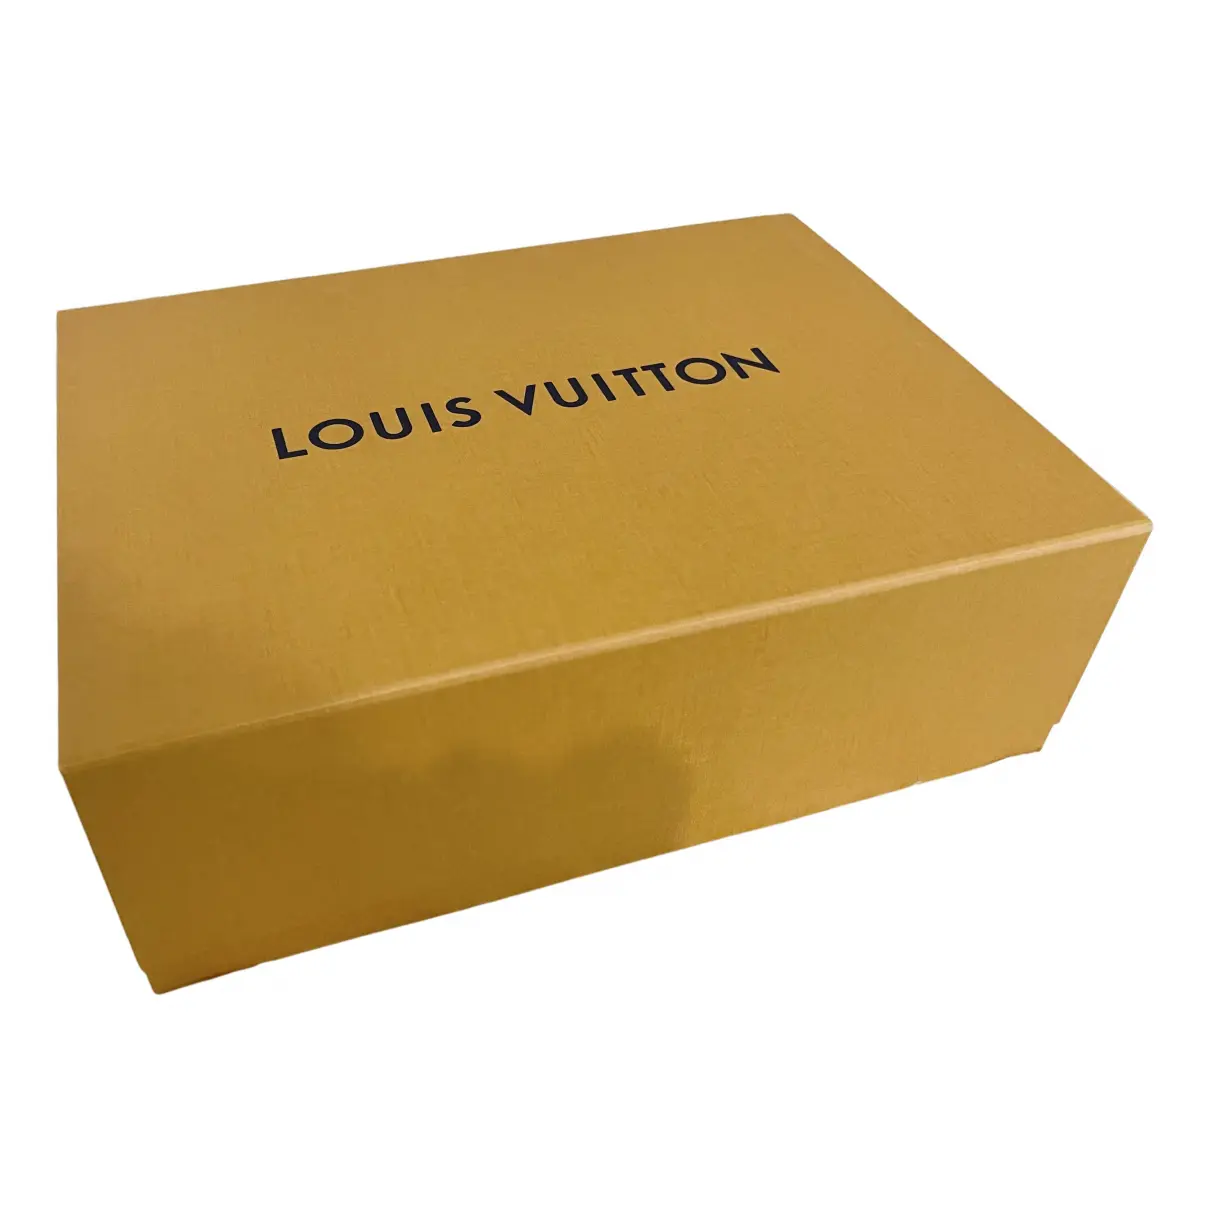 Desk accessorie Louis Vuitton